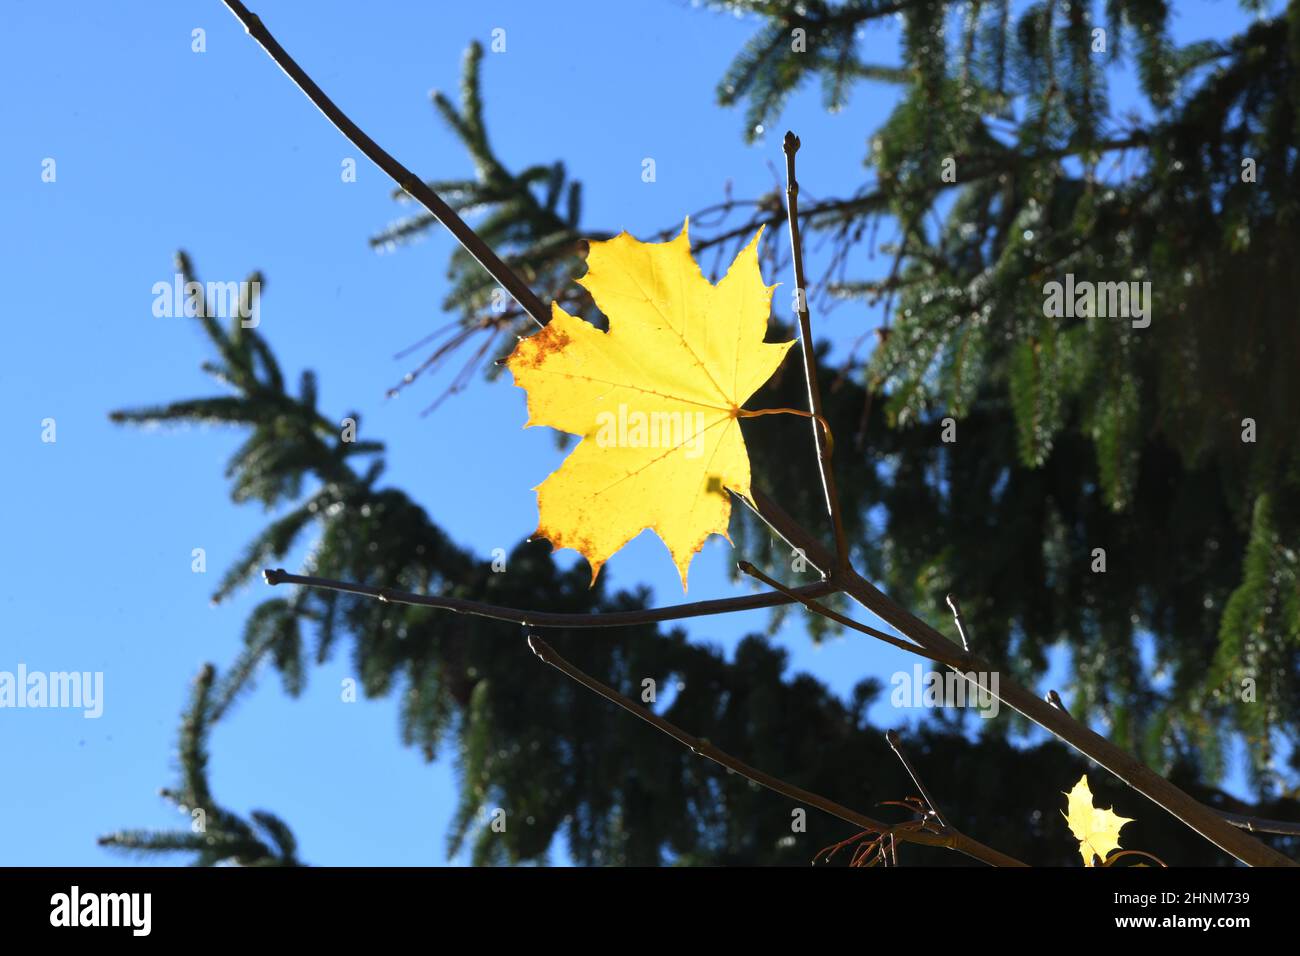 Gelbes Herbstlaub eines Ahornbaumes im Salzkammergut, Oberösterreich, Europa - Yellow autumn leaves of a maple tree in the Salzkammergut, Upper Austria, Europe Stock Photo